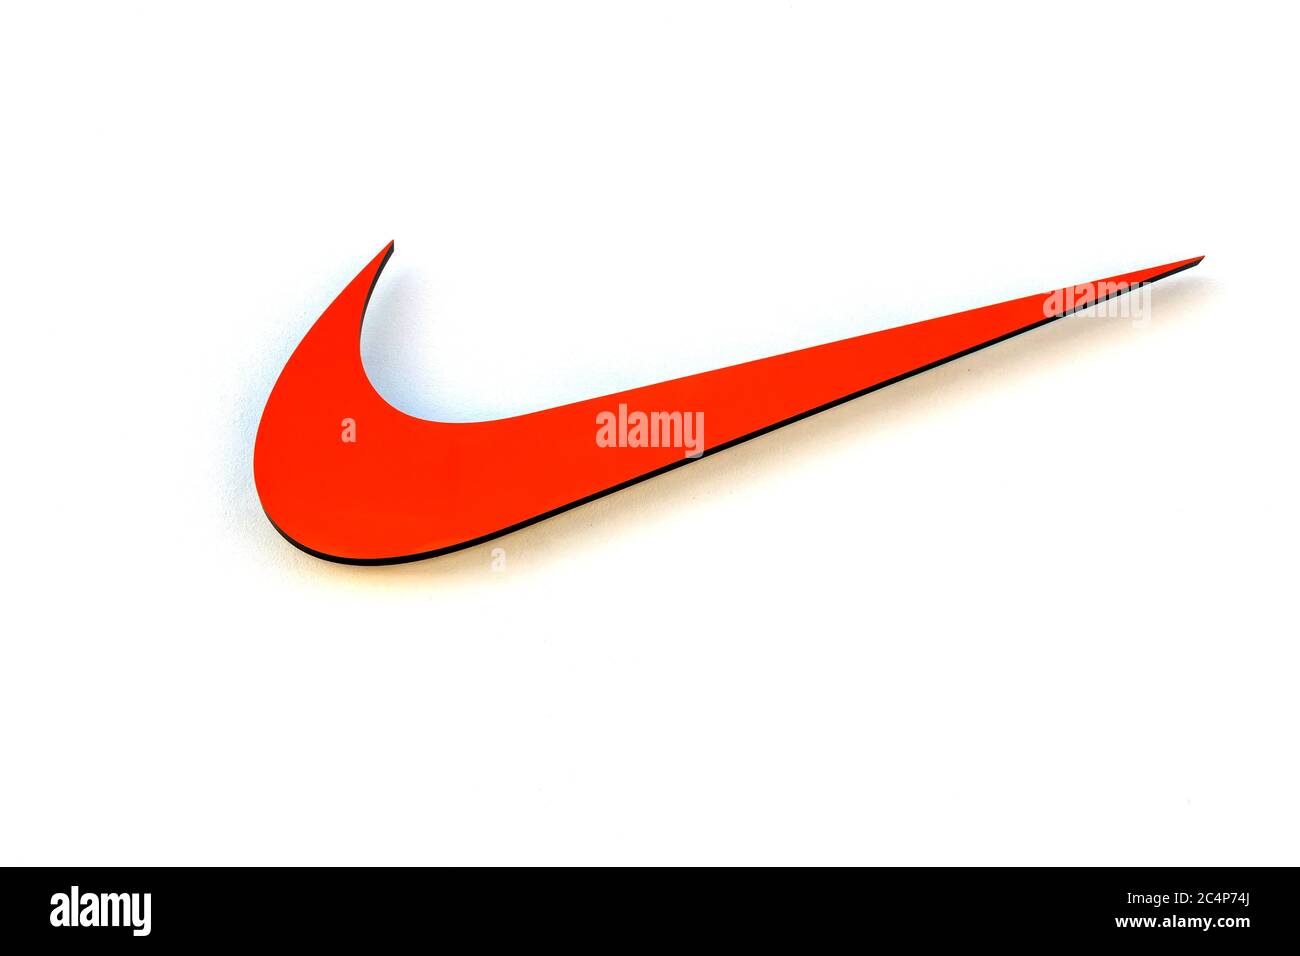 Herzogenaurach : logotipo de Nike firma el DE AGOSTO de 2017 en ALEMANIA Nike Inc. Es una corporación multinacional estadounidense que se dedica a la venta de calzado Fotografía de stock - Alamy